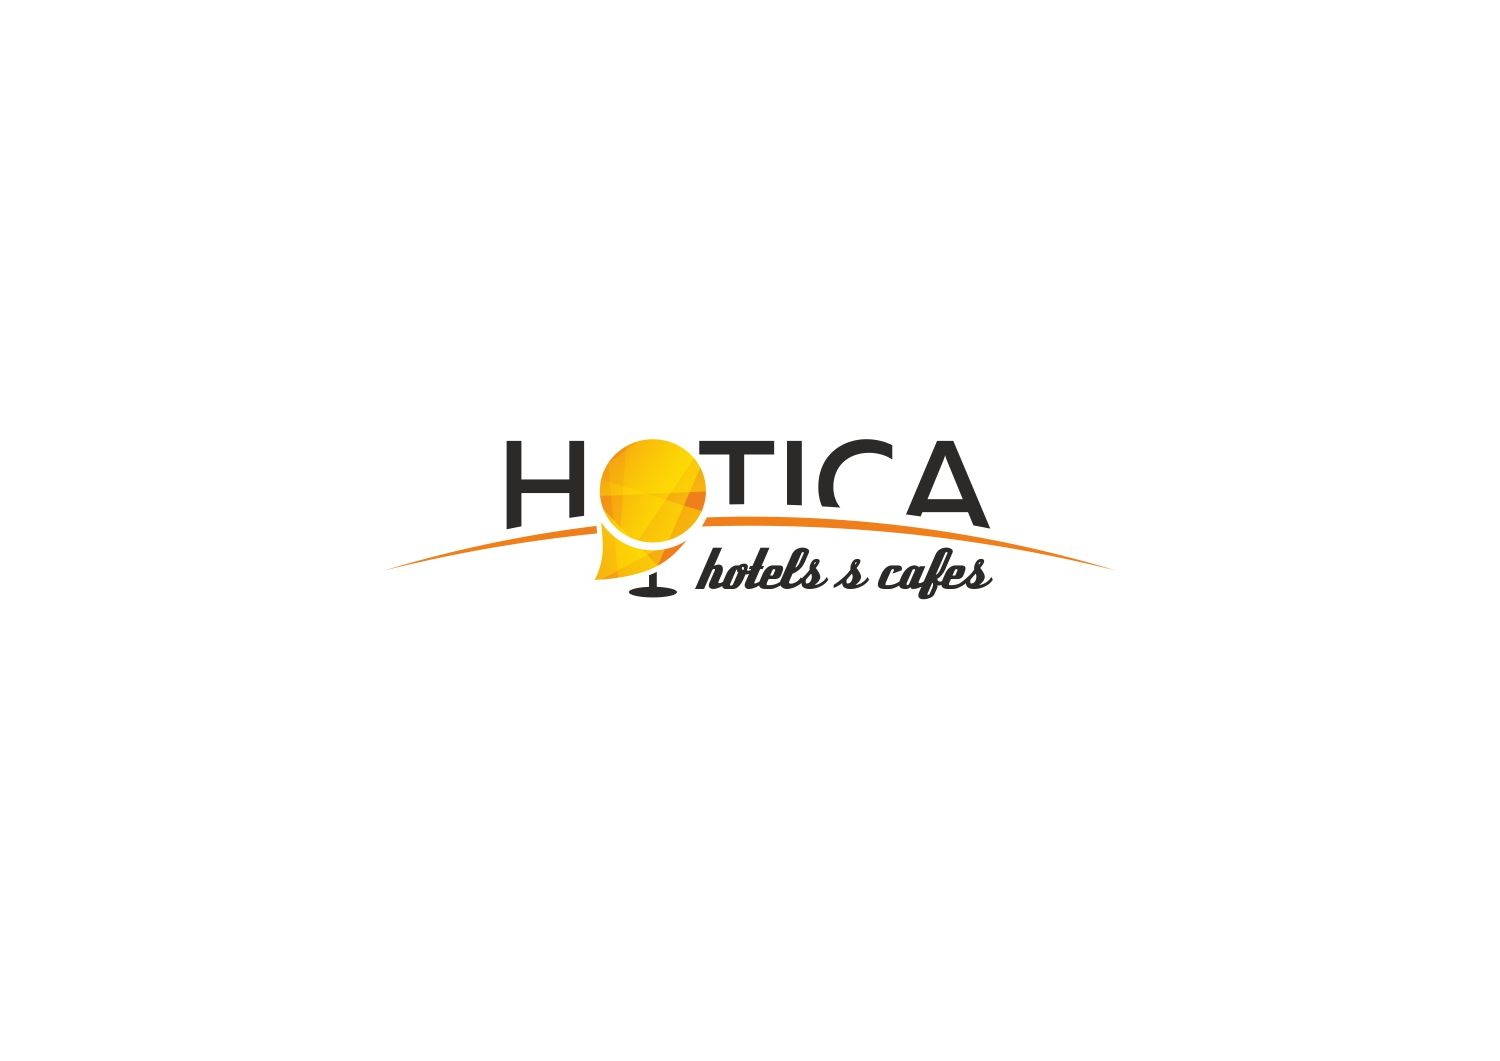 Лого и фирменный стиль для  HOTICA или ОТИКА  (хотелось бы взгляд дизайнера) - дизайнер LeksaKolomiec